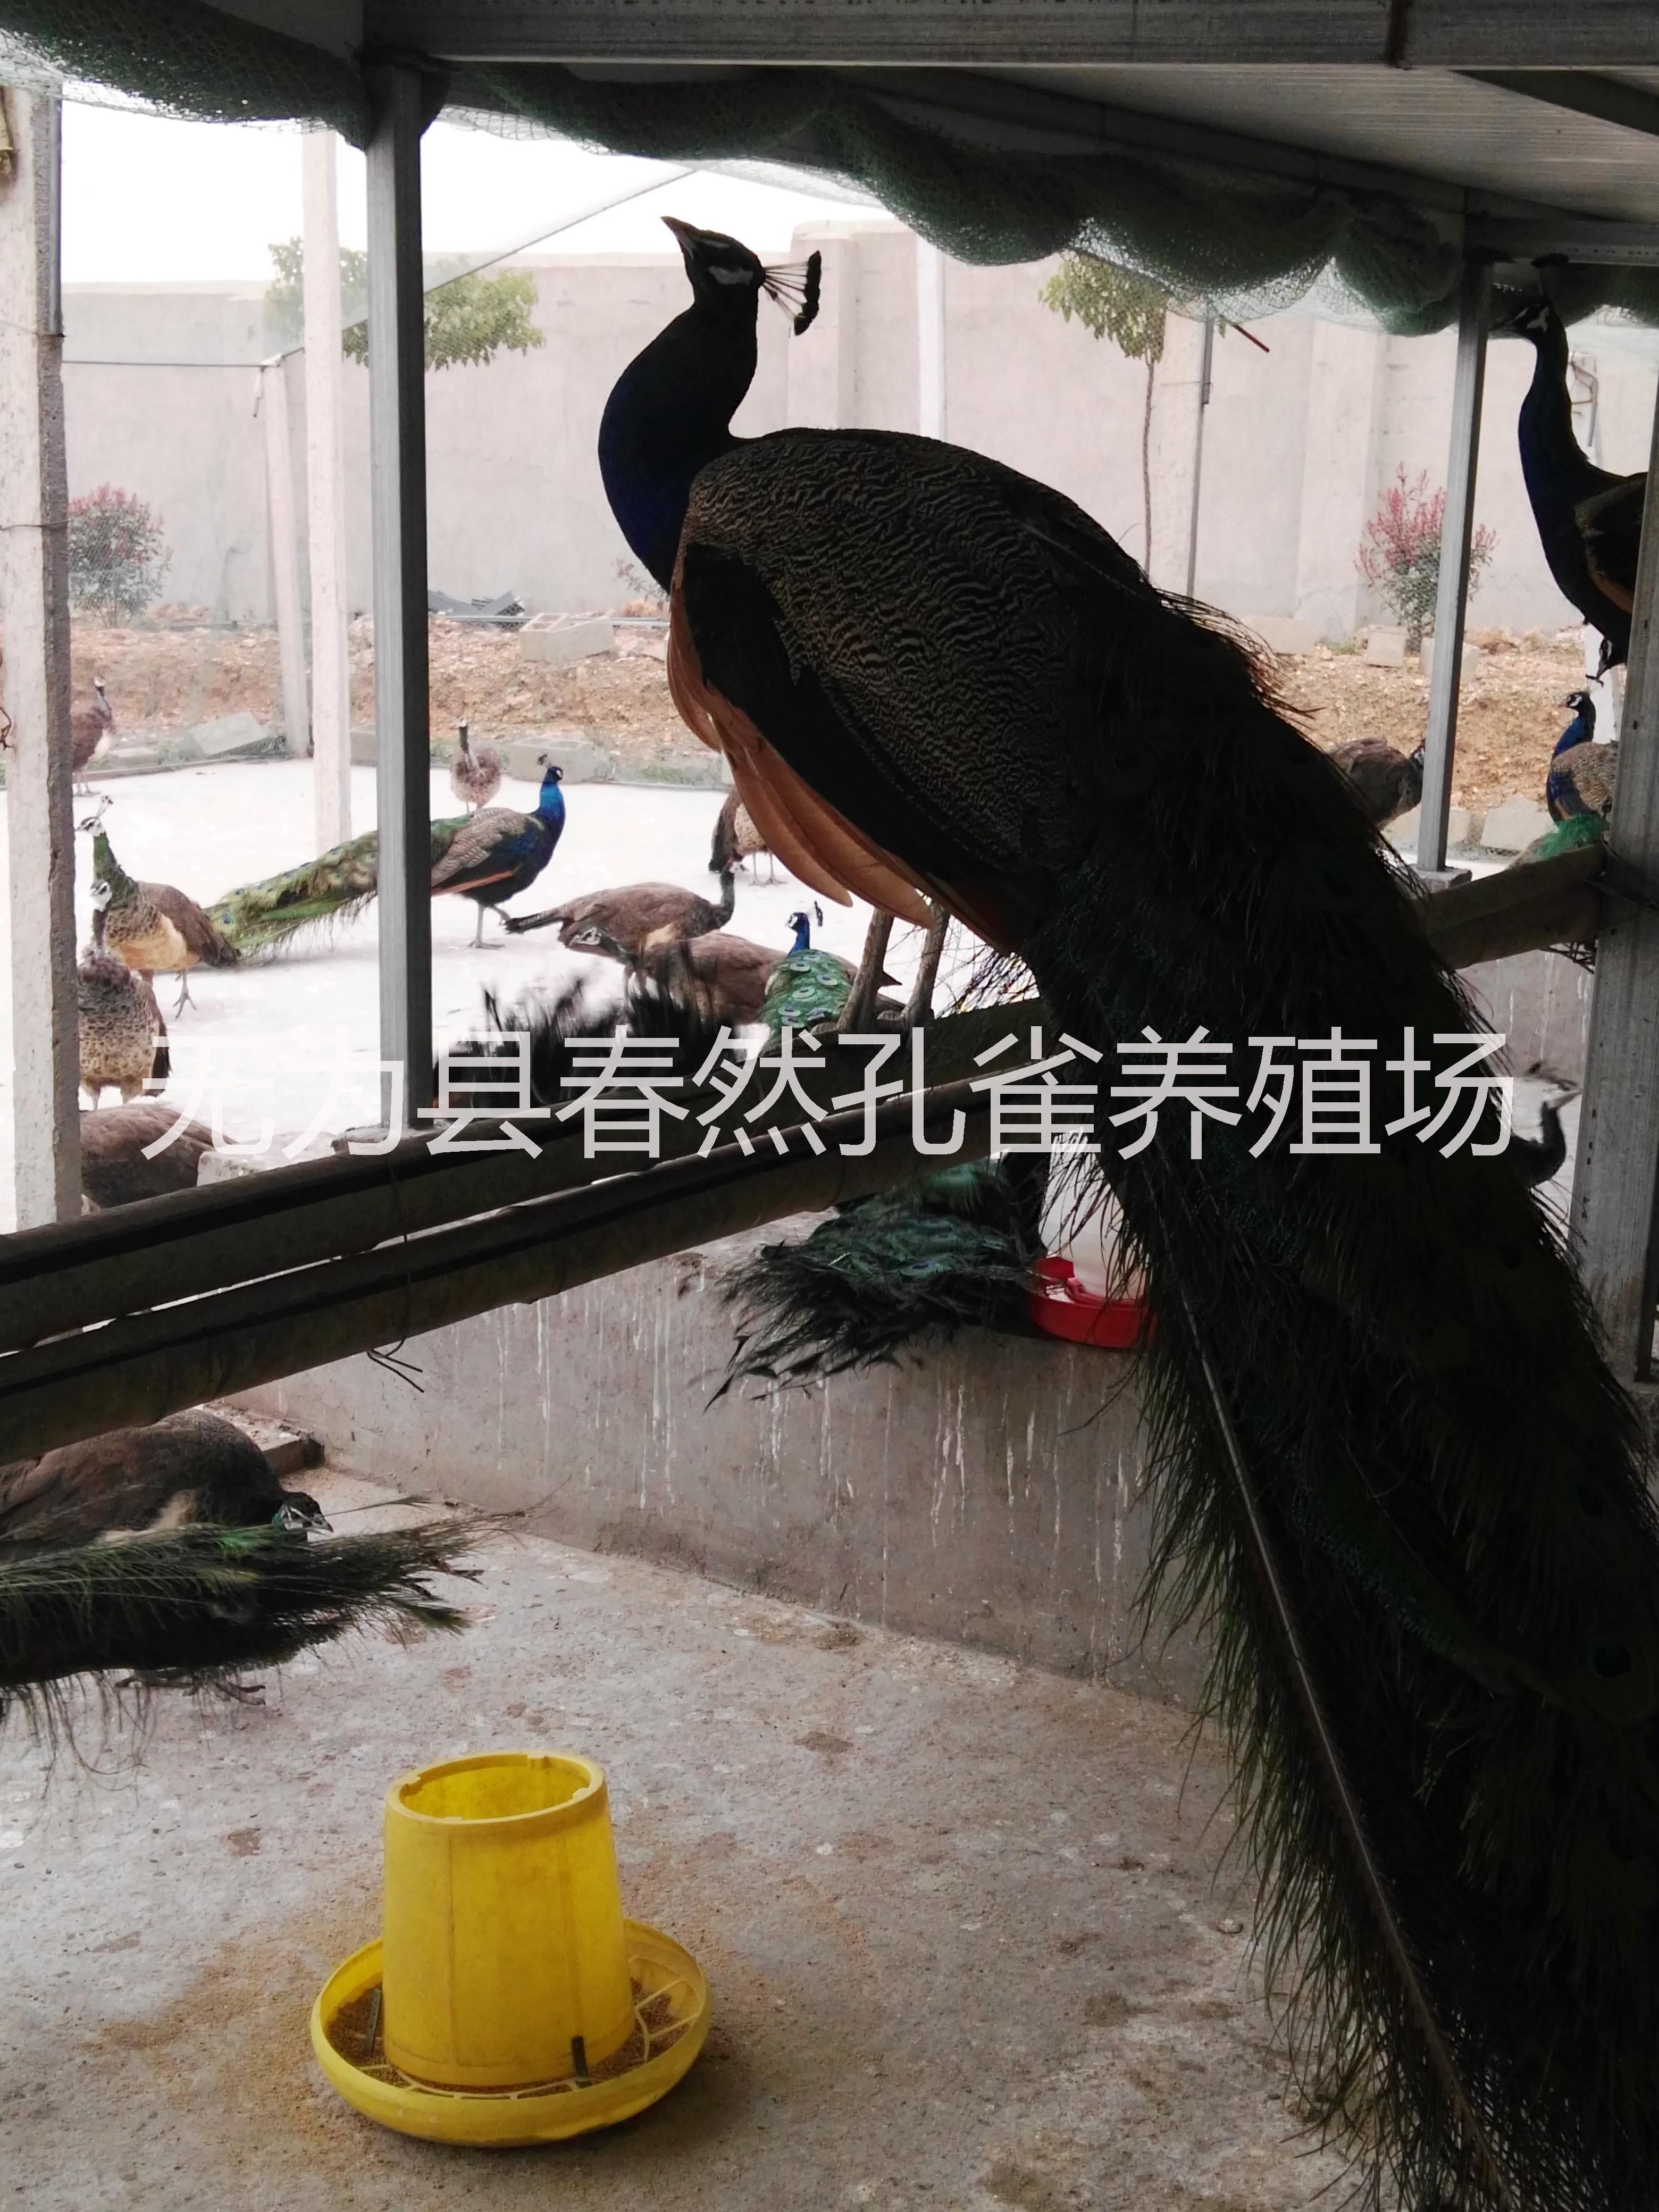 中国市场孔雀标本供应安徽省浩然孔雀养殖有限公司 中国市场孔雀标本供应图片